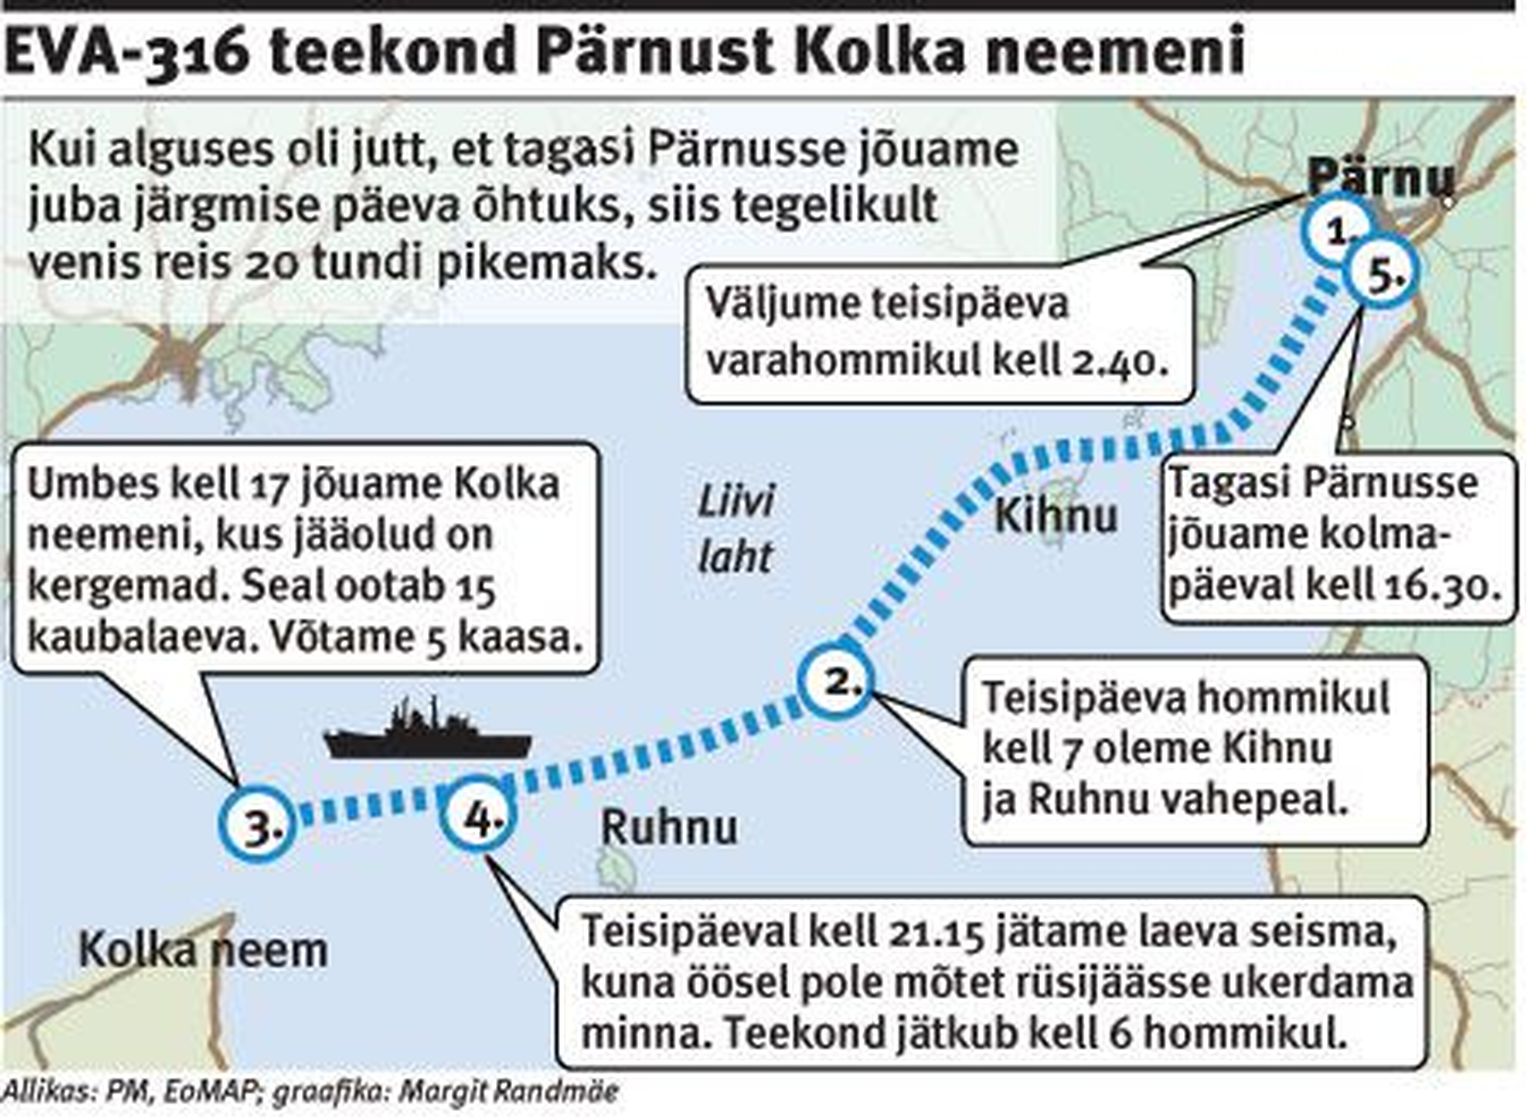 EVA-316 teekond Pärnust Kolka neemeni.